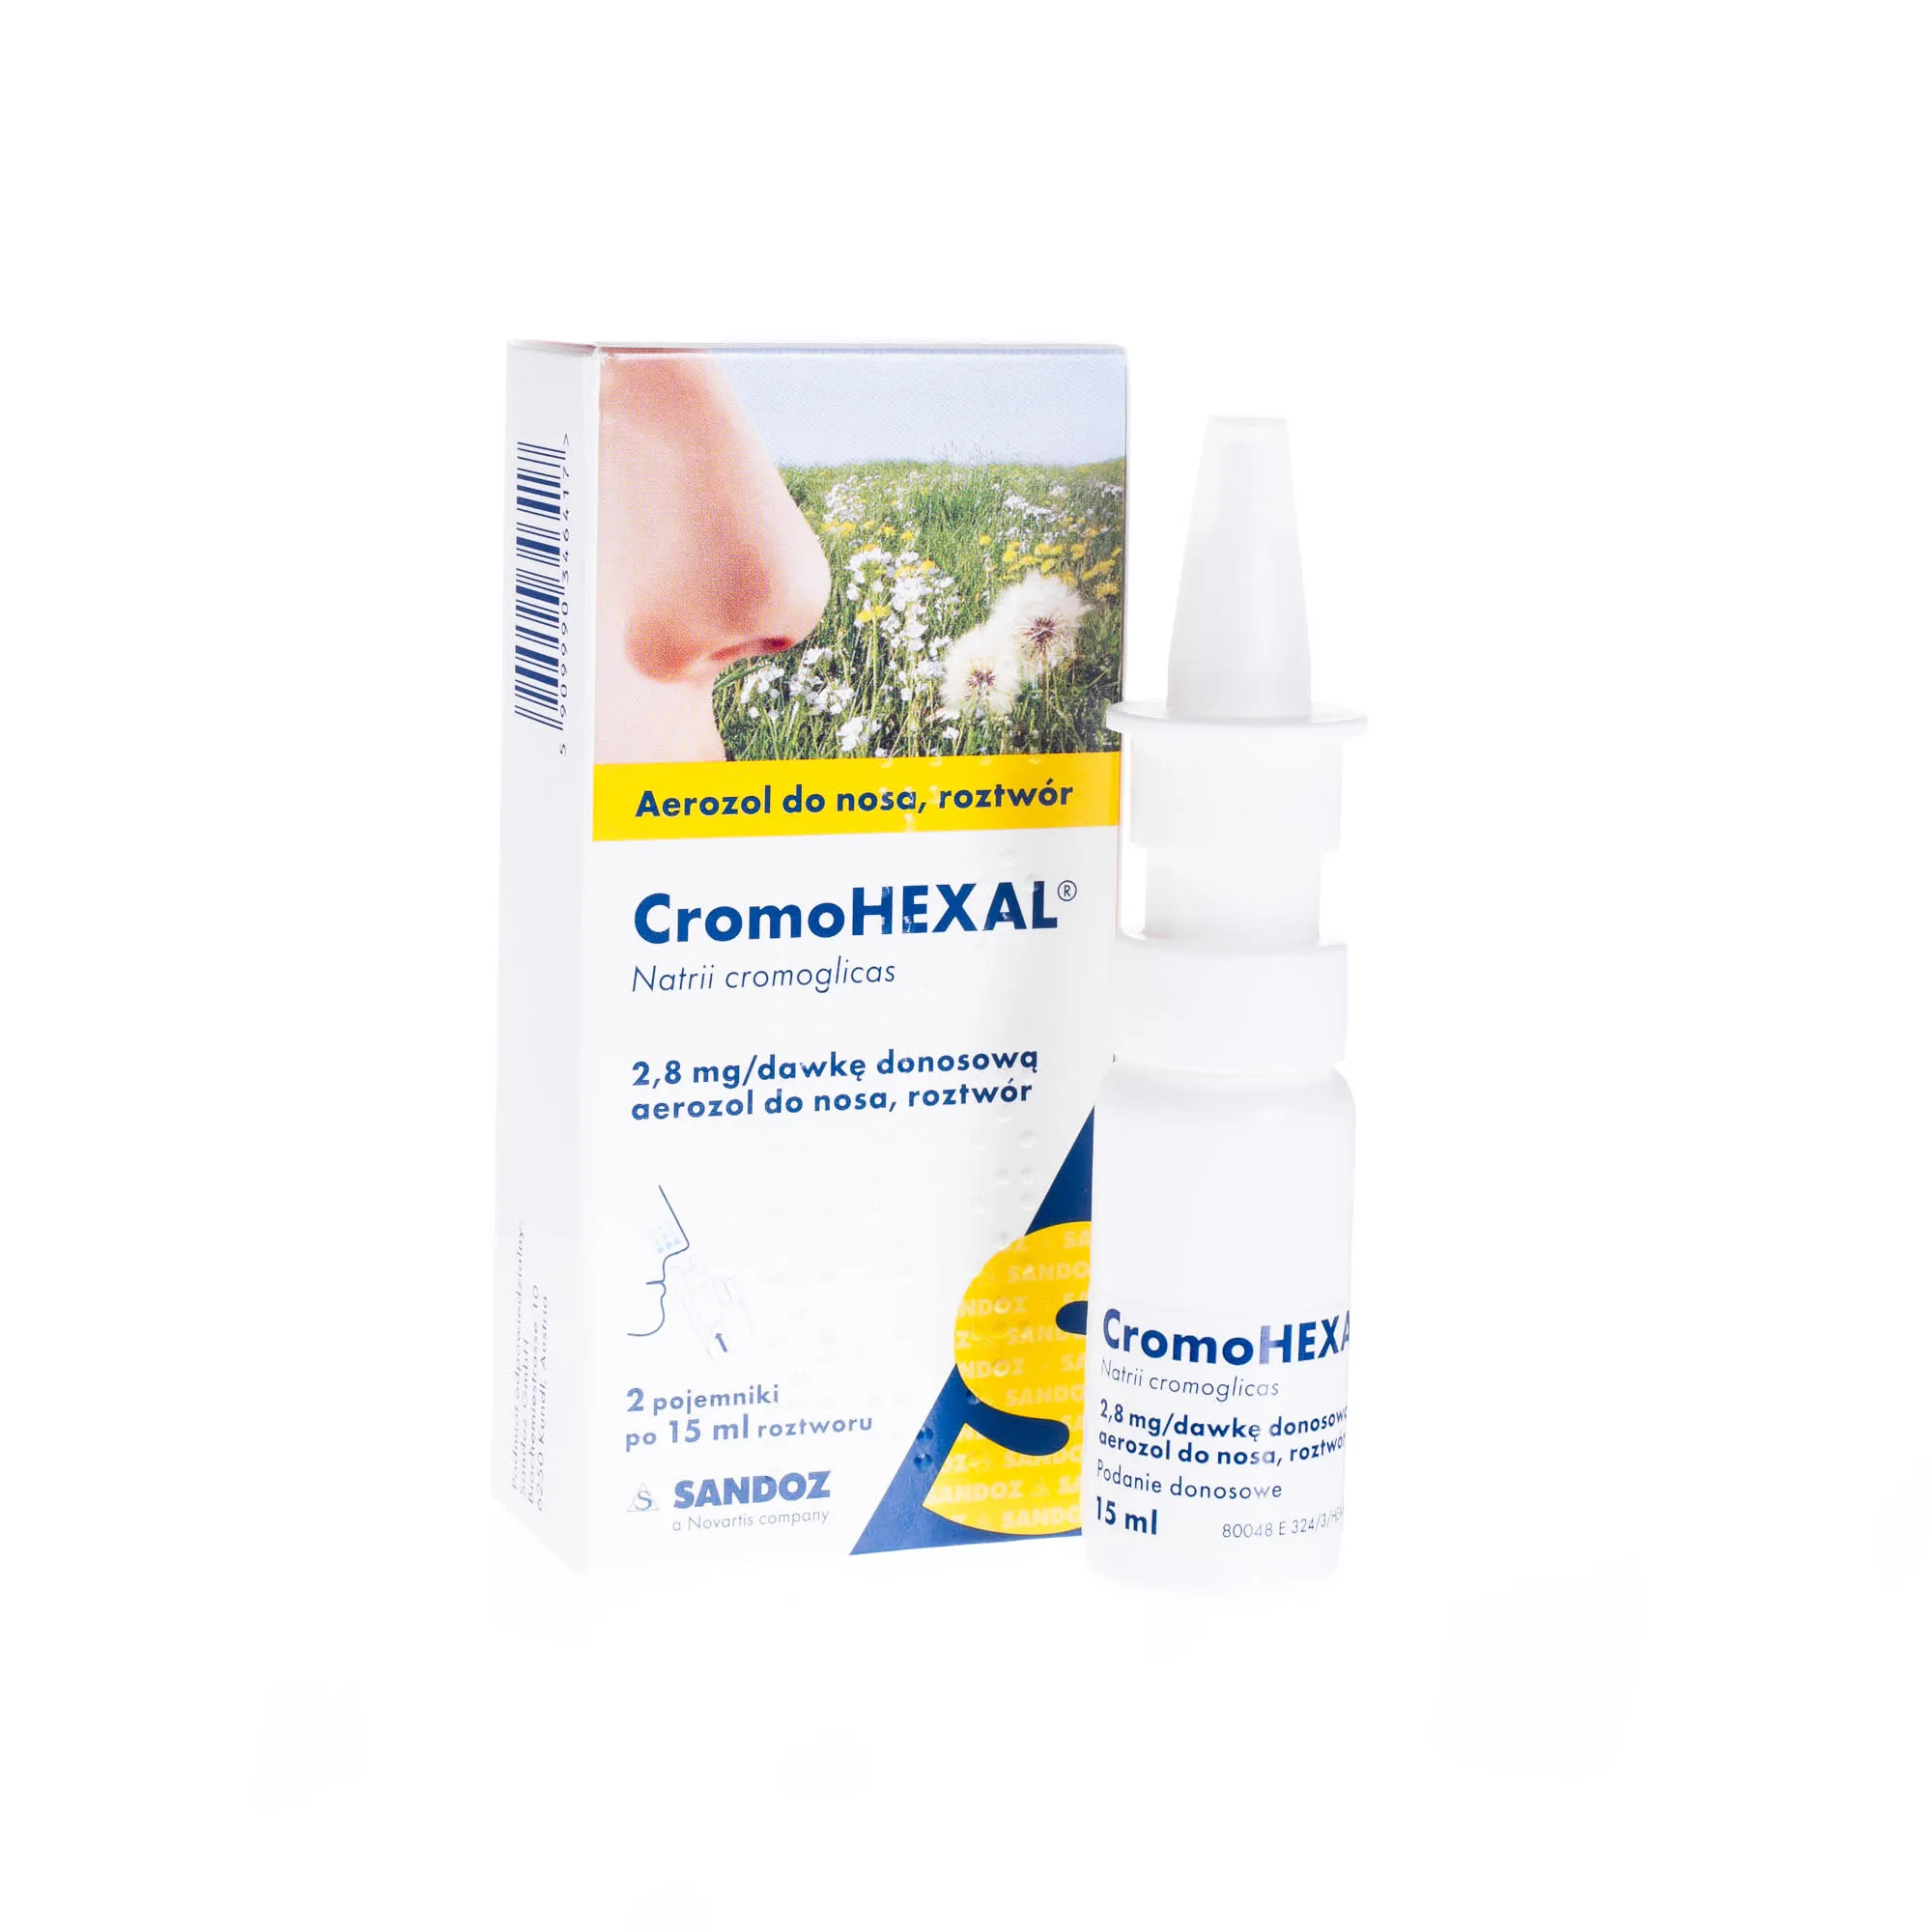 CromoHEXAL, 2,8 mg/dawkę donosową, aerozol do nosa, roztwór, 2 pojemniki po 15 ml 